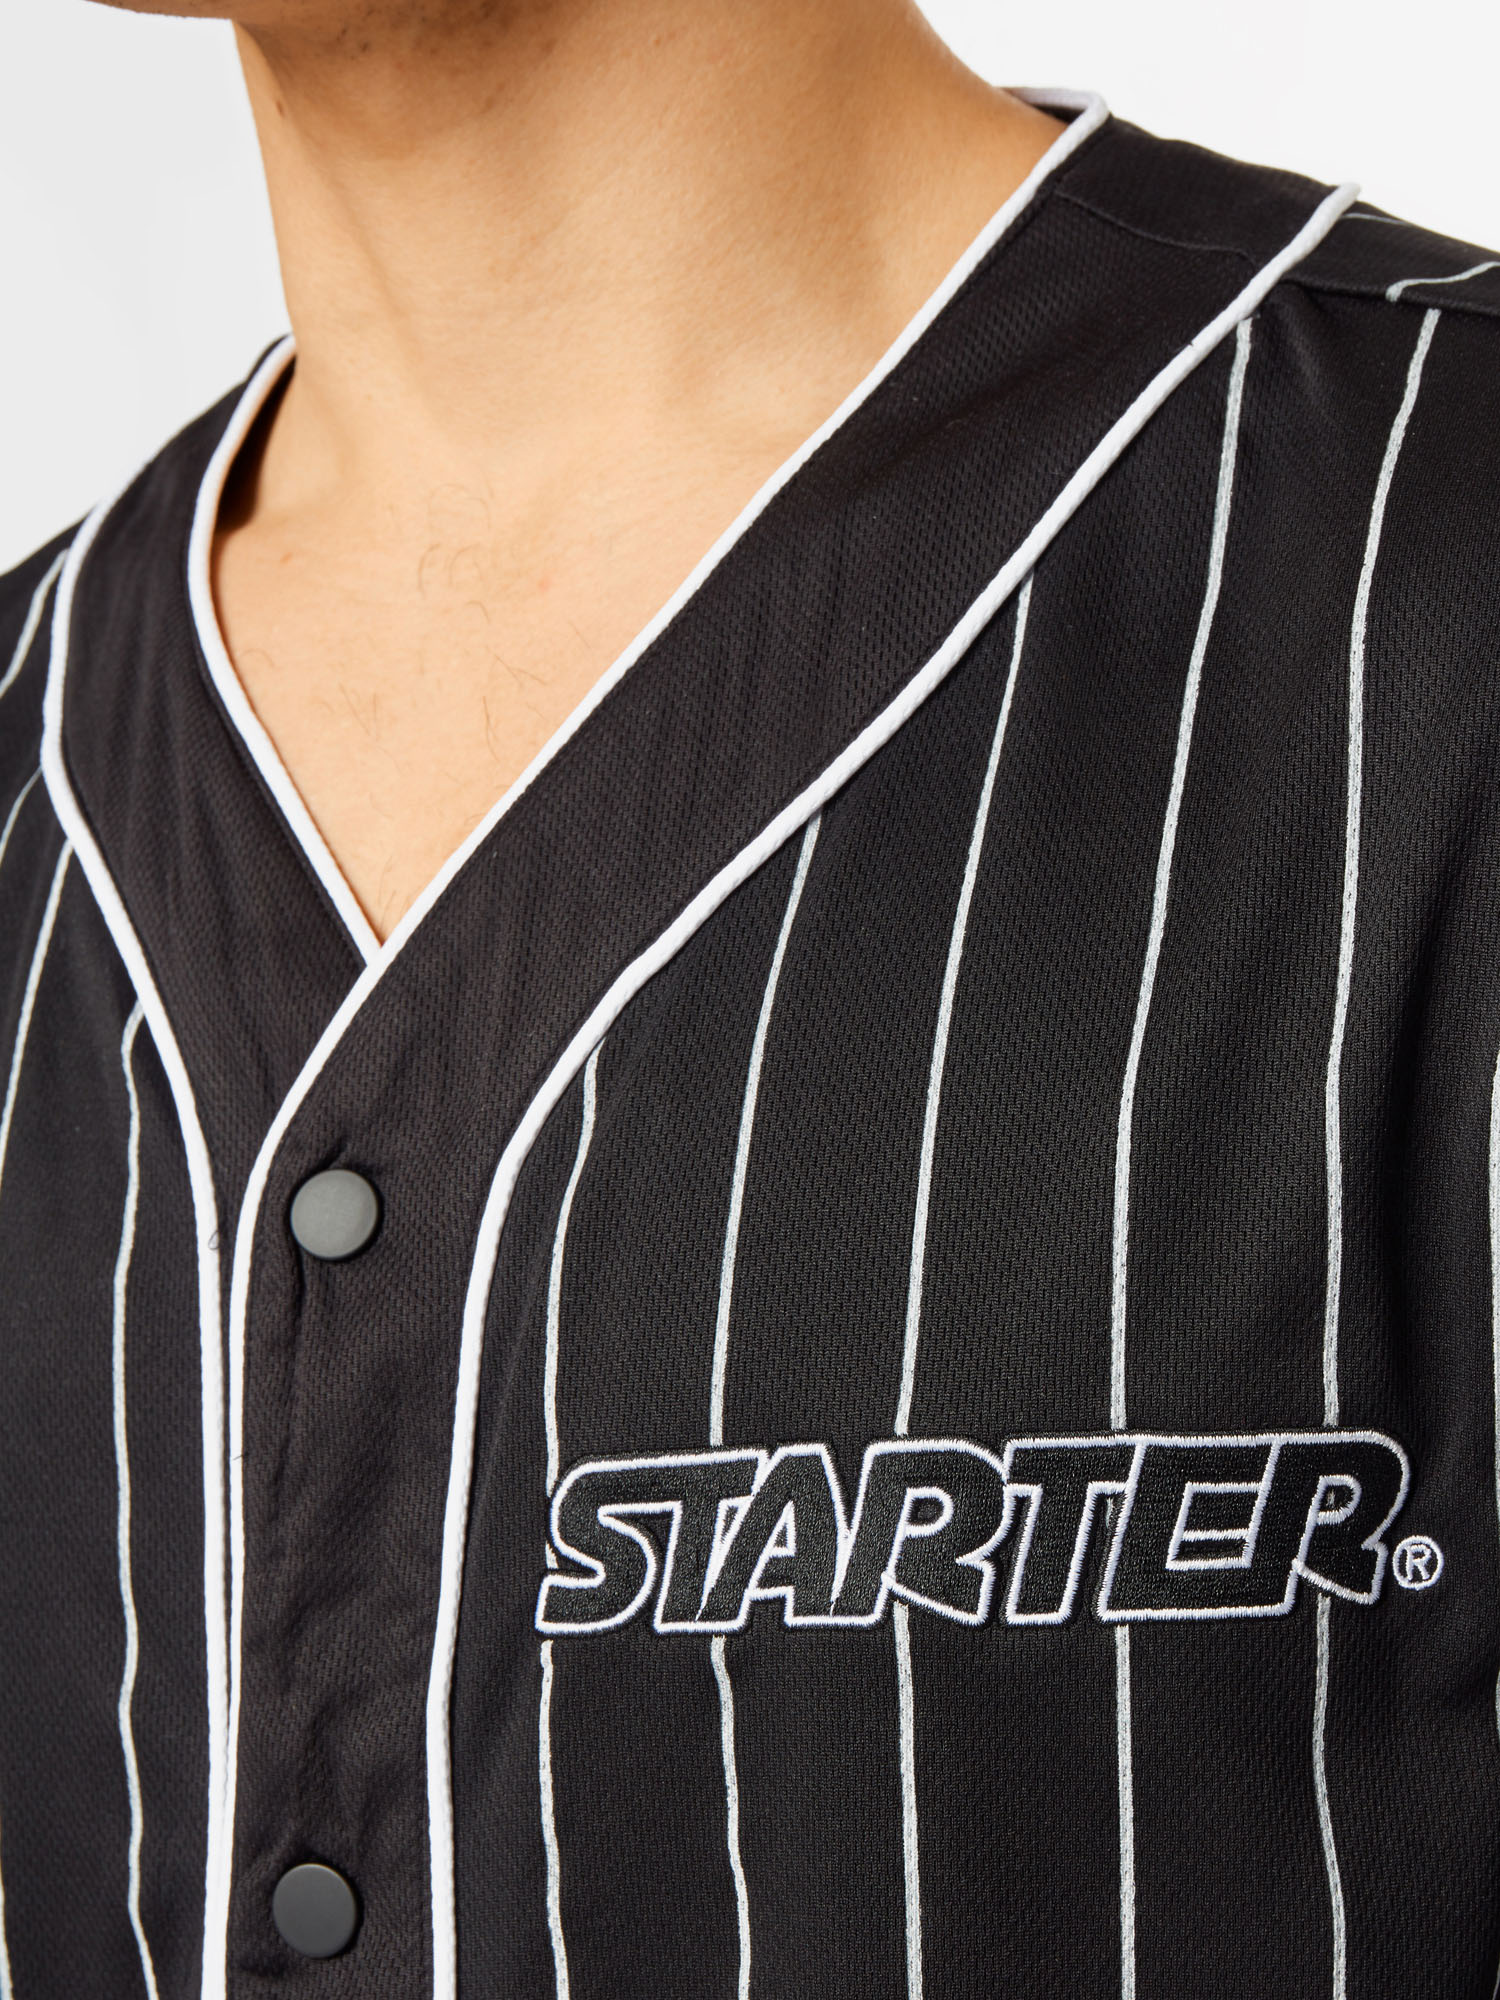 Odzież Mężczyźni Starter Black Label Koszula w kolorze Czarnym 